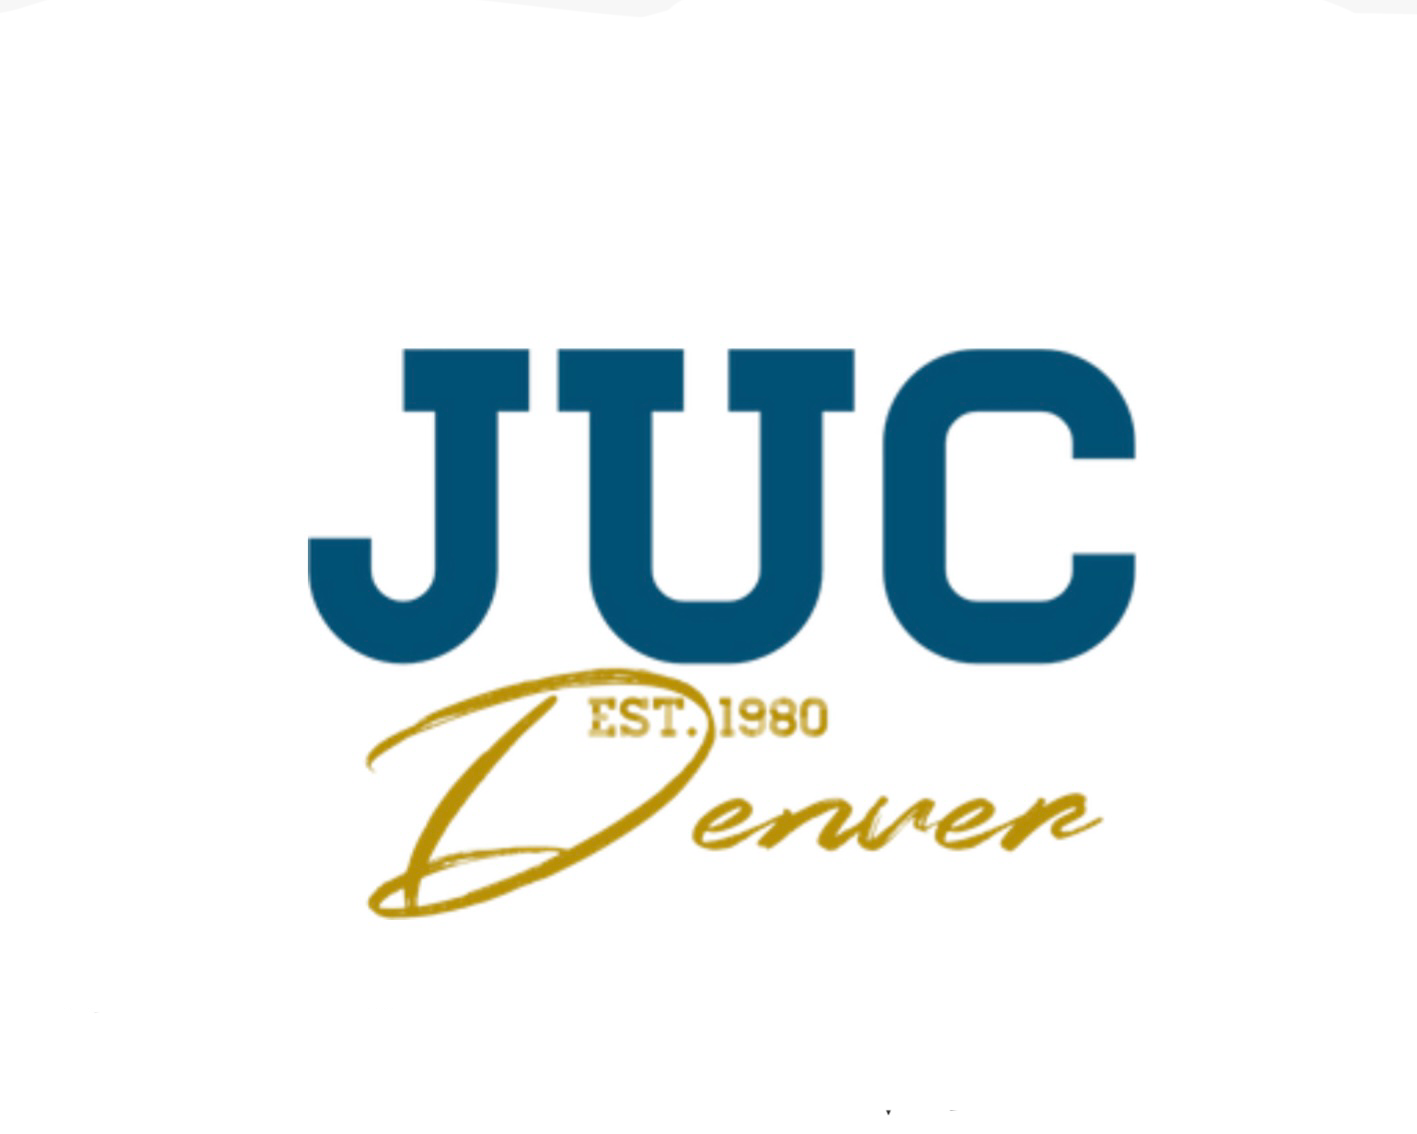 Jewish University of Colorado (JUC) verzeichnet beispiellose Nachfrage dank einzigartigem Rechtsstatus, Fernun